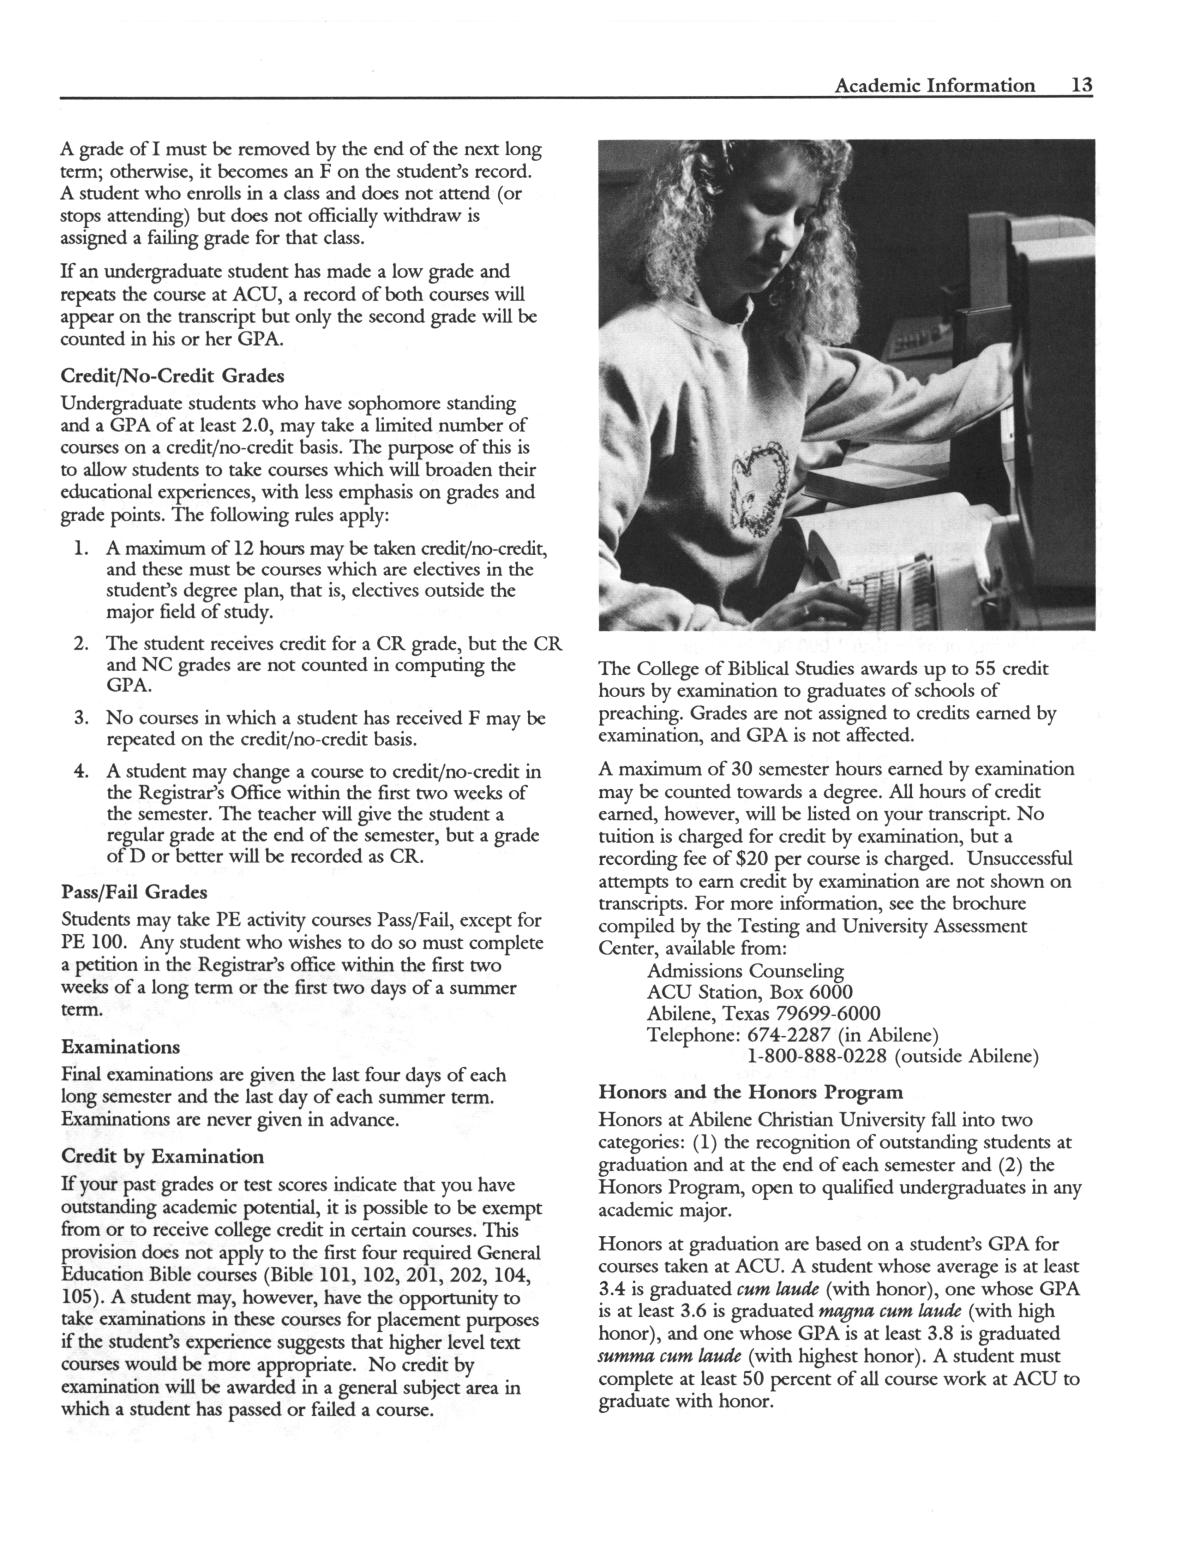 Catalog of Abilene Christian University, 1991-1992
                                                
                                                    13
                                                